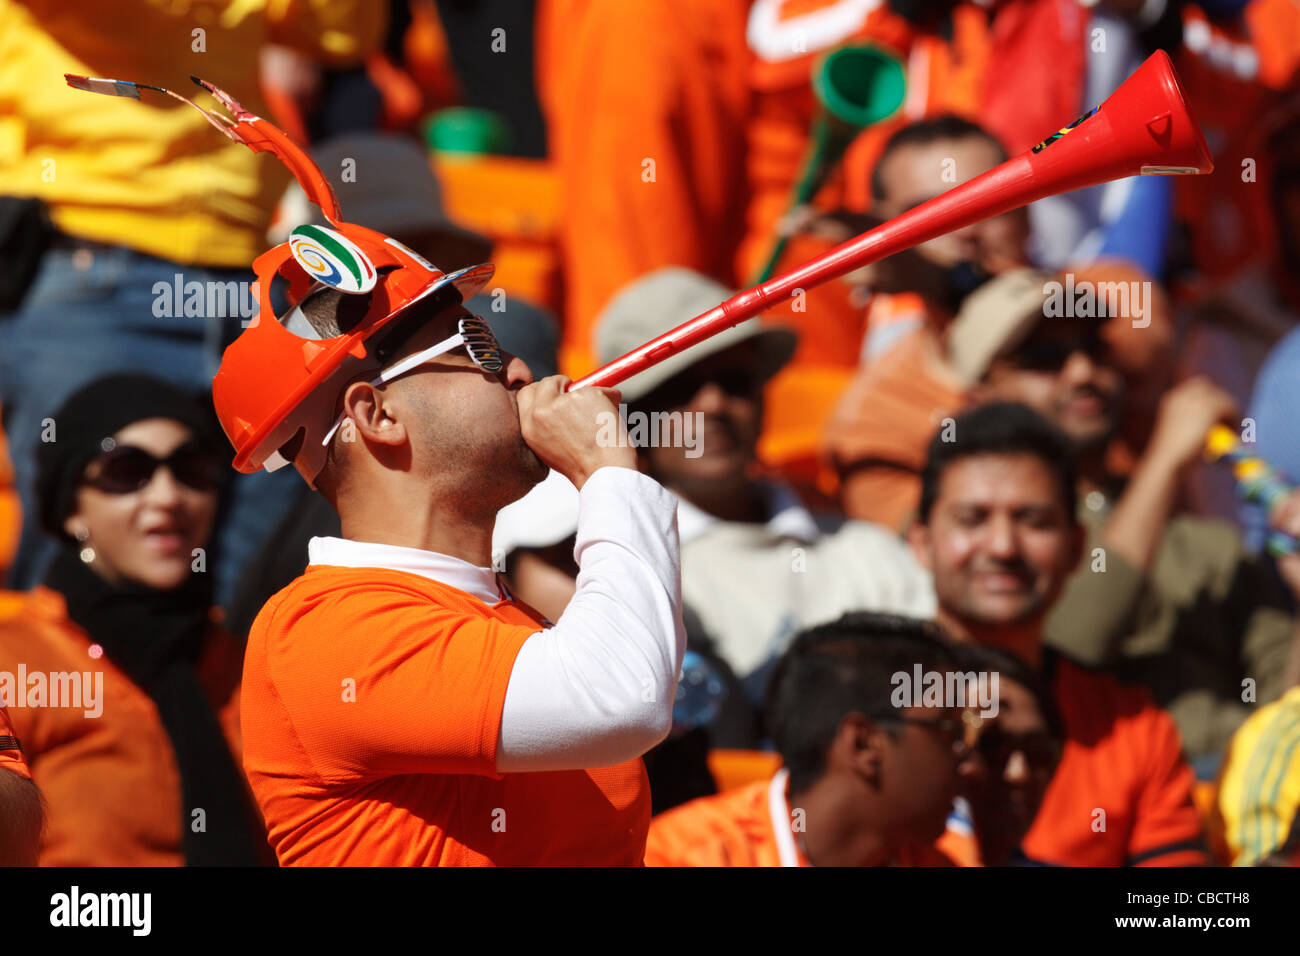 Un sostenitore Holland soffia un vuvuzela a 2010 FIFA World Cup match tra la Danimarca e i Paesi Bassi. Foto Stock